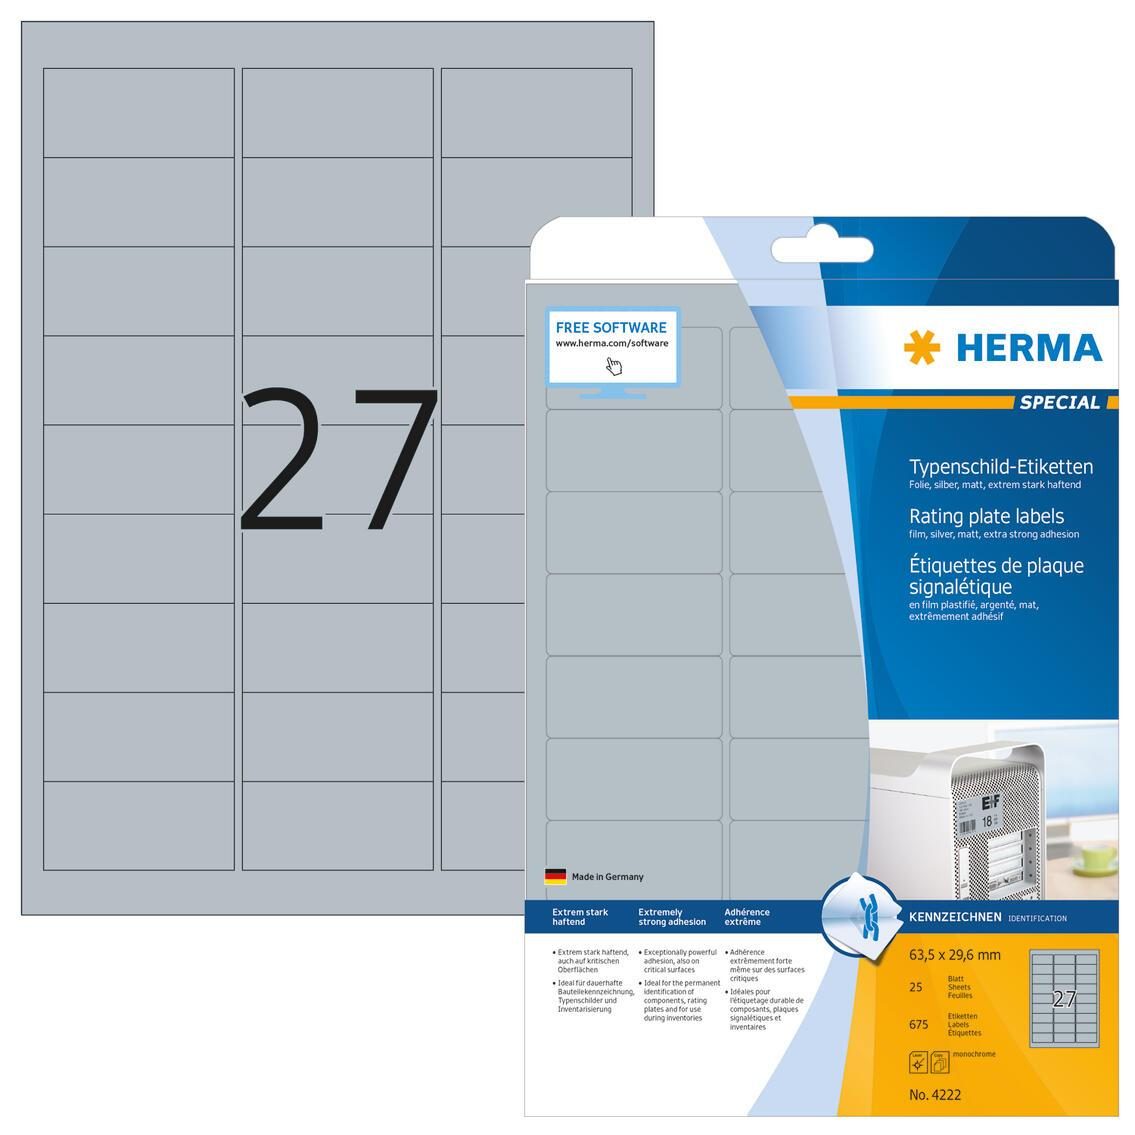 HERMA Typenschild-Etiketten Typenschild Etik.63,5x29,6 sil 63,5 x 29,6 mm Silber von HERMA